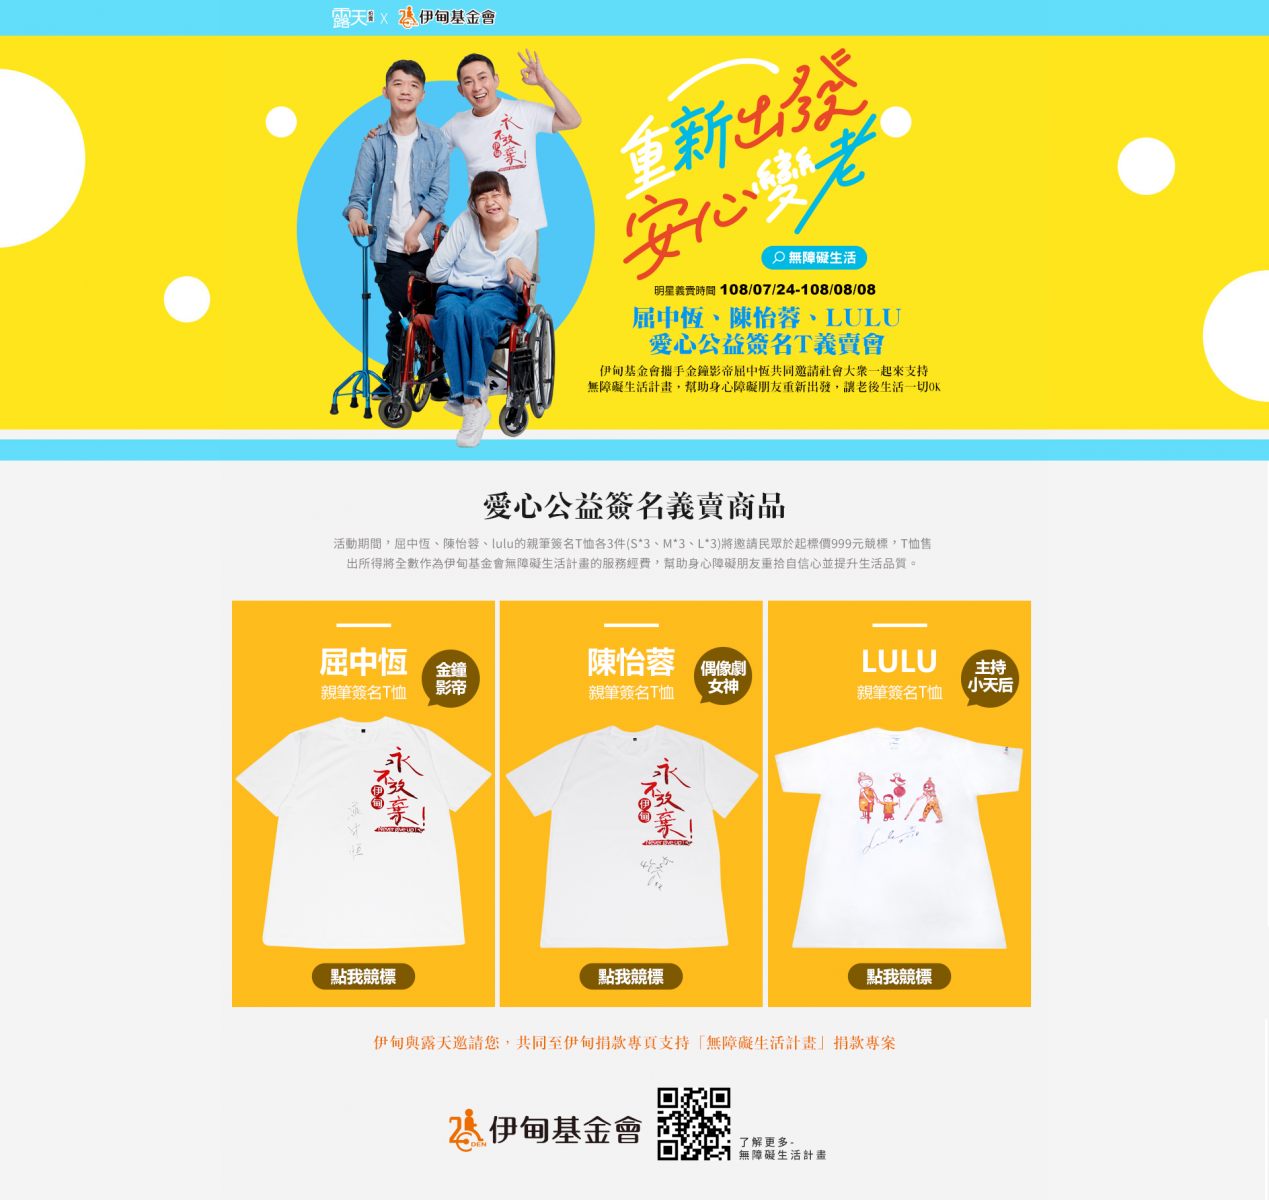 露天明星簽名T恤公益競標義賣活動即日起至8月8日止。